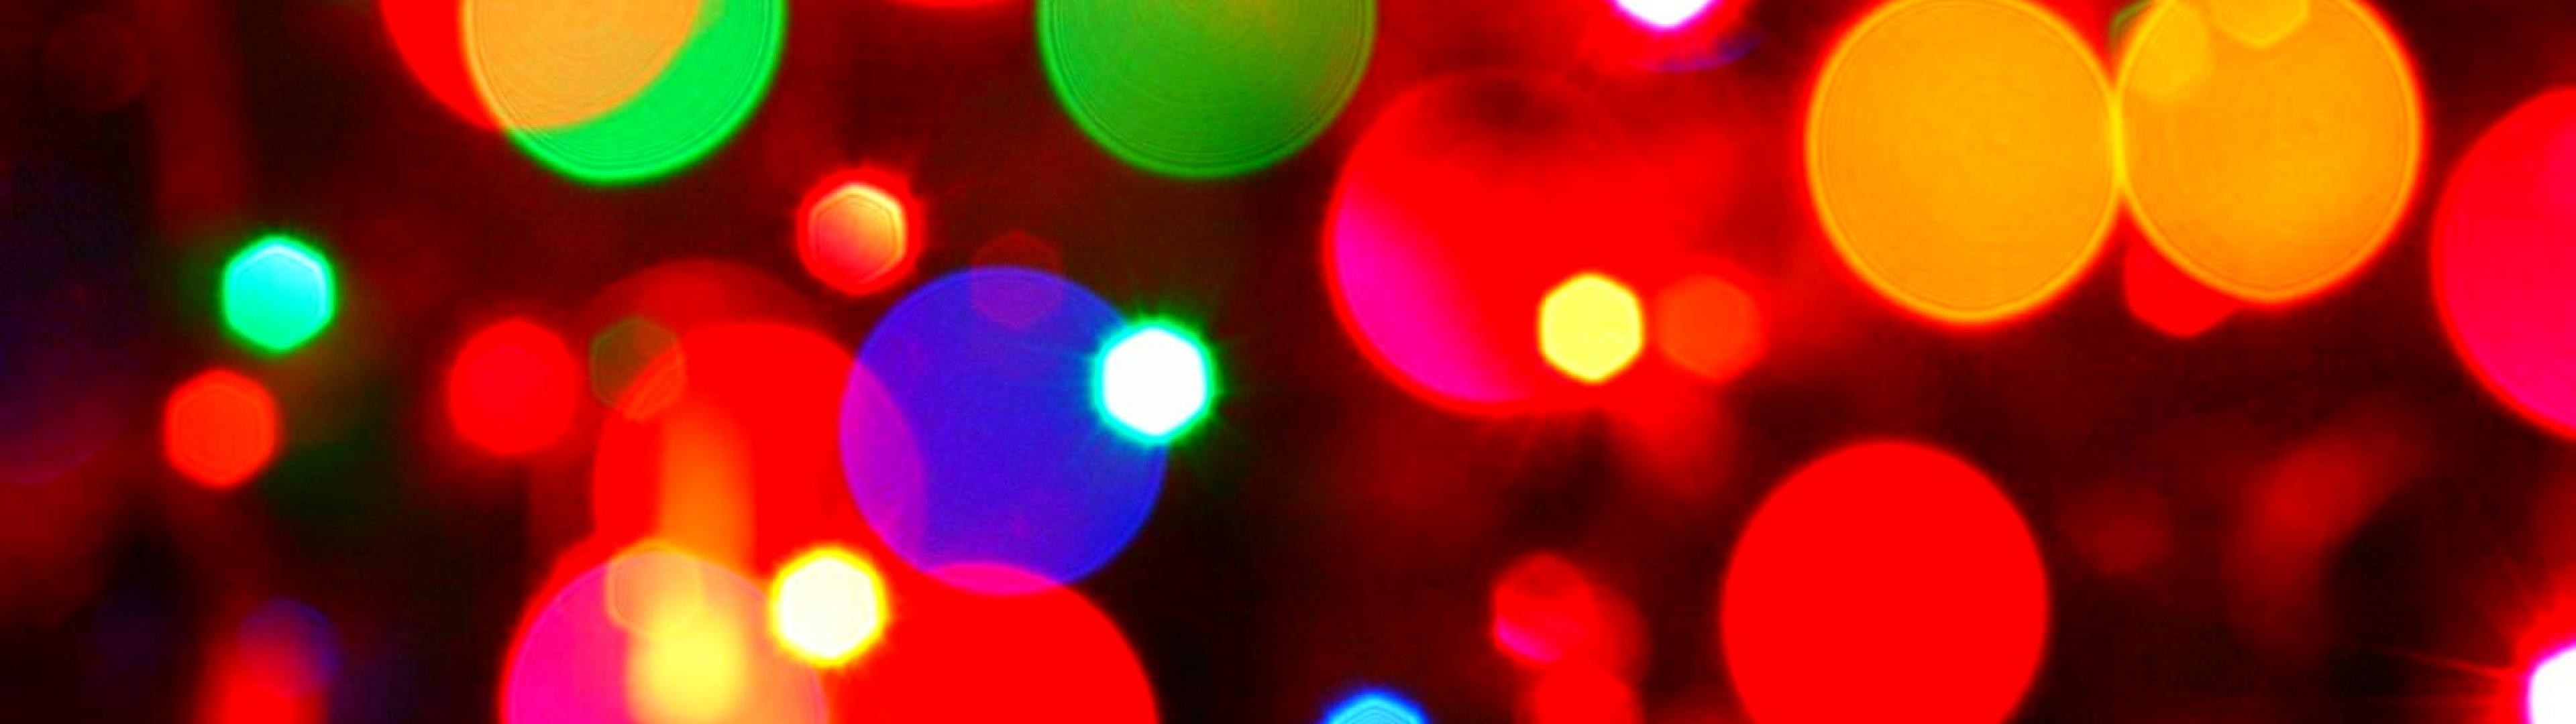 3840x1080 lights christmas bokeh HD Wallpaper Christmas New Year 242452 